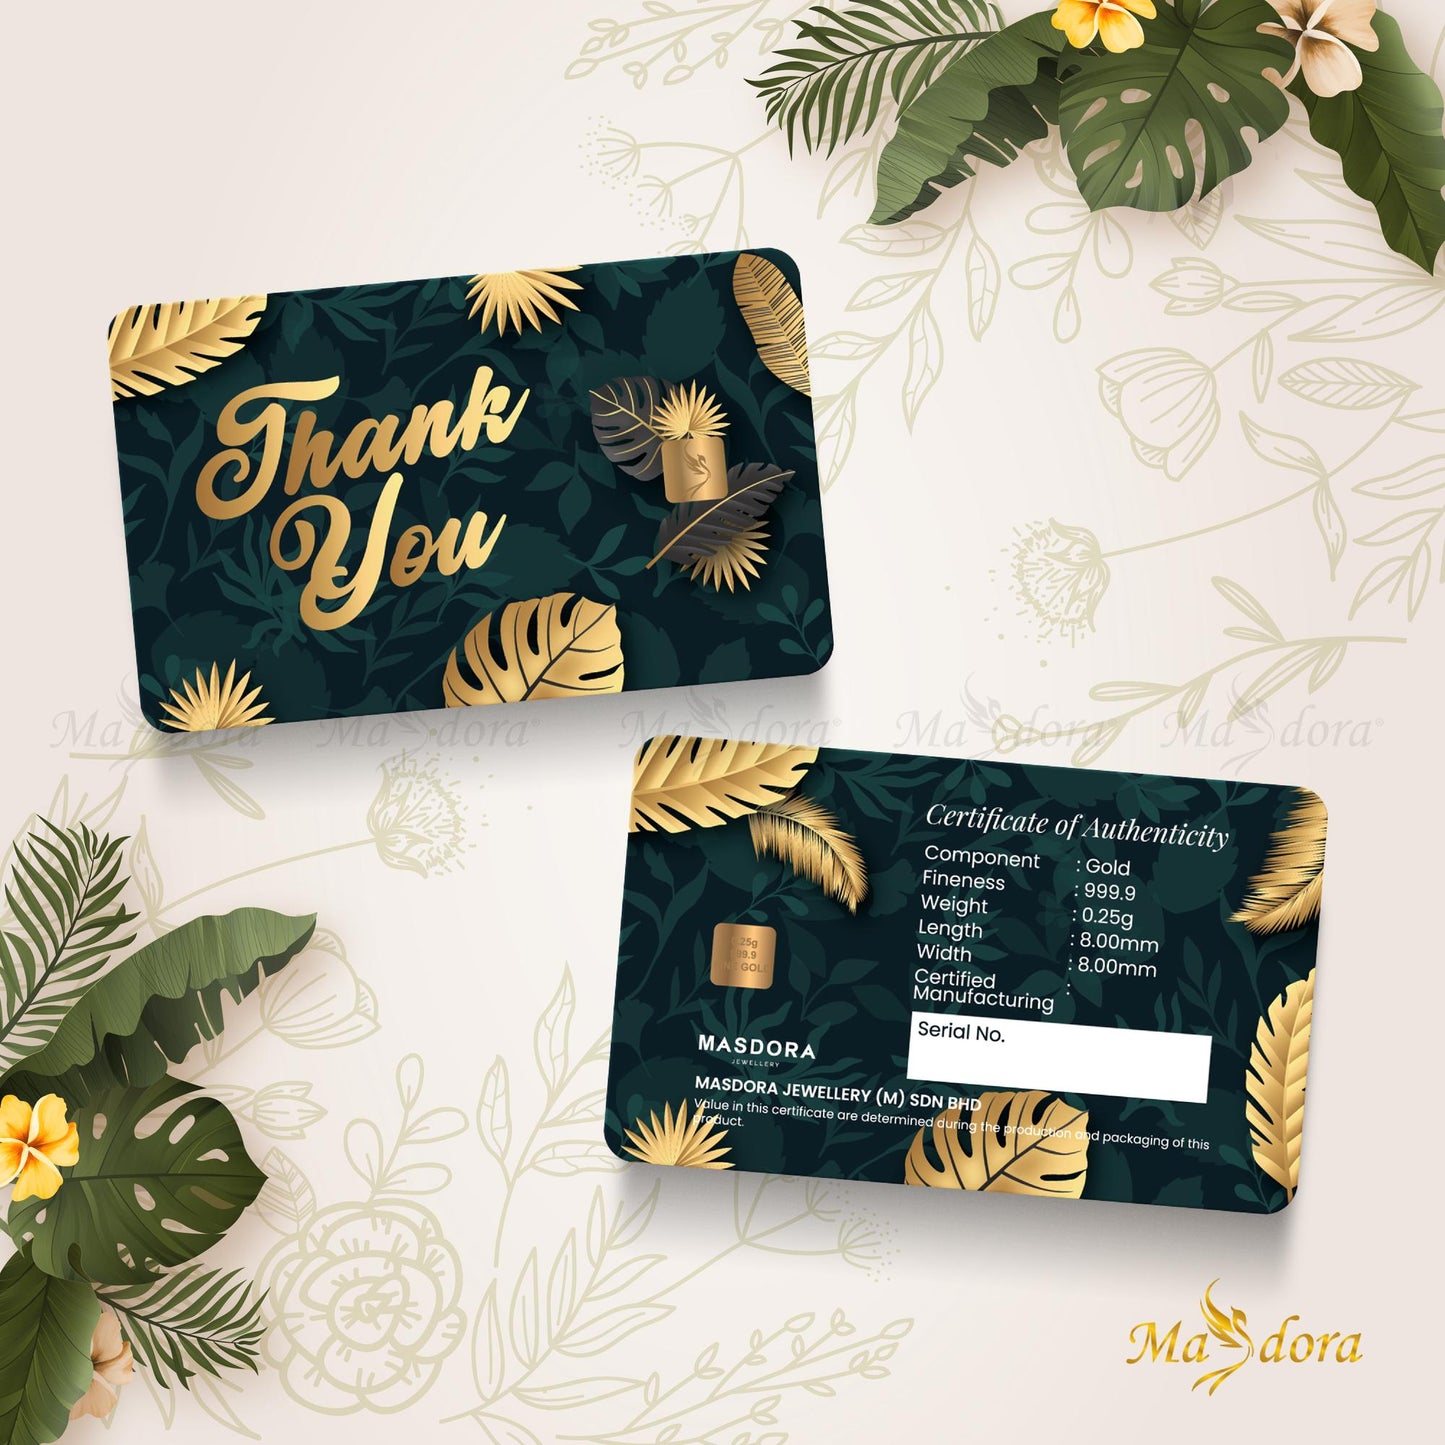 Masdora 0.25g Gold Bar 999.9 ~ Thank You Card Collection (Emas 999.9)